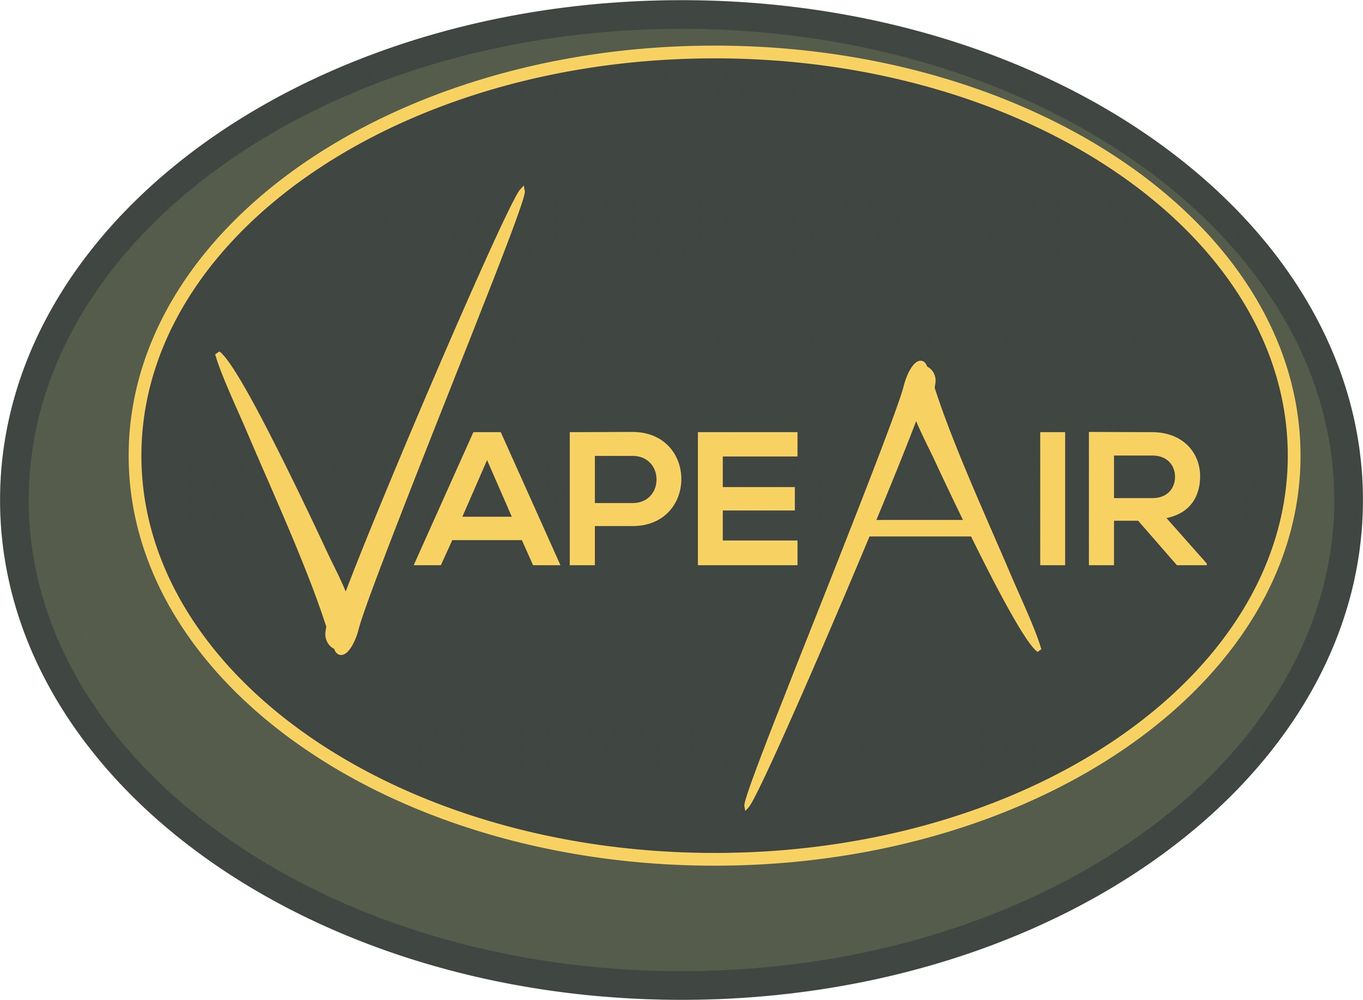 Vape vapor VapeAir Vape Air ecigarette eliquid ejuice vaporizer disposable bar pod coils atomizer co